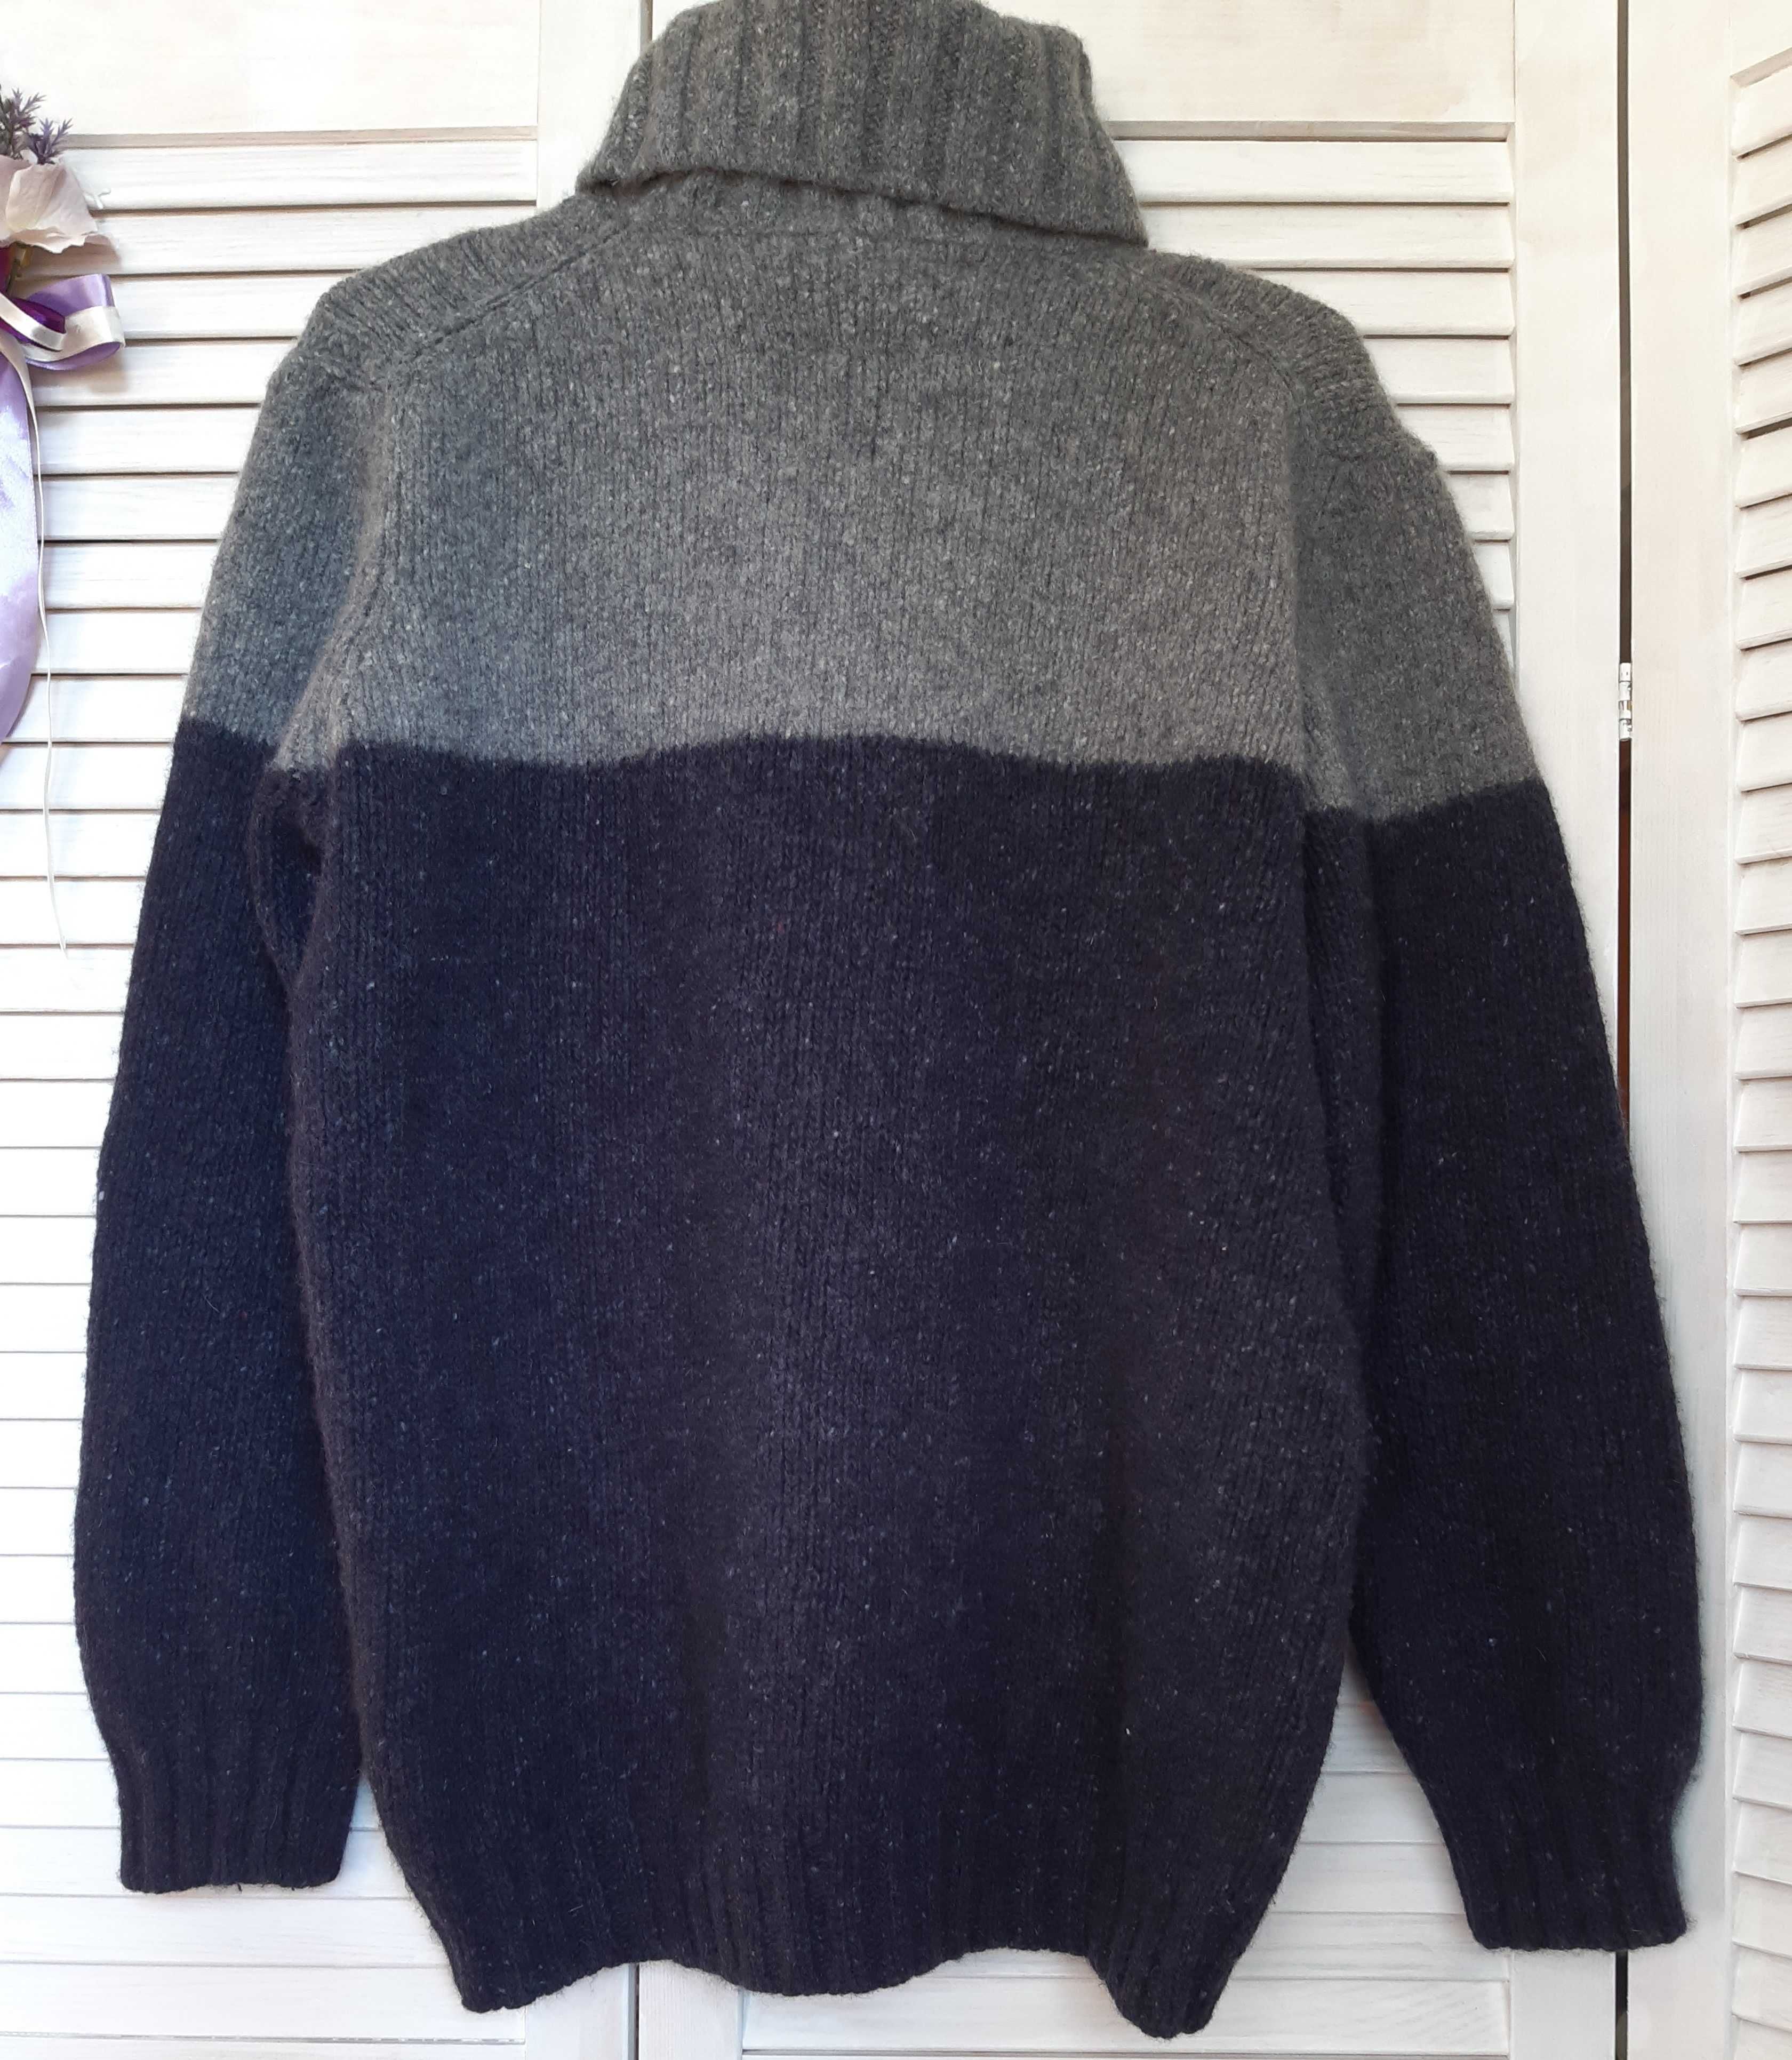 Мужской вязанный свитер, вязка косы, из шерсти италия lewis